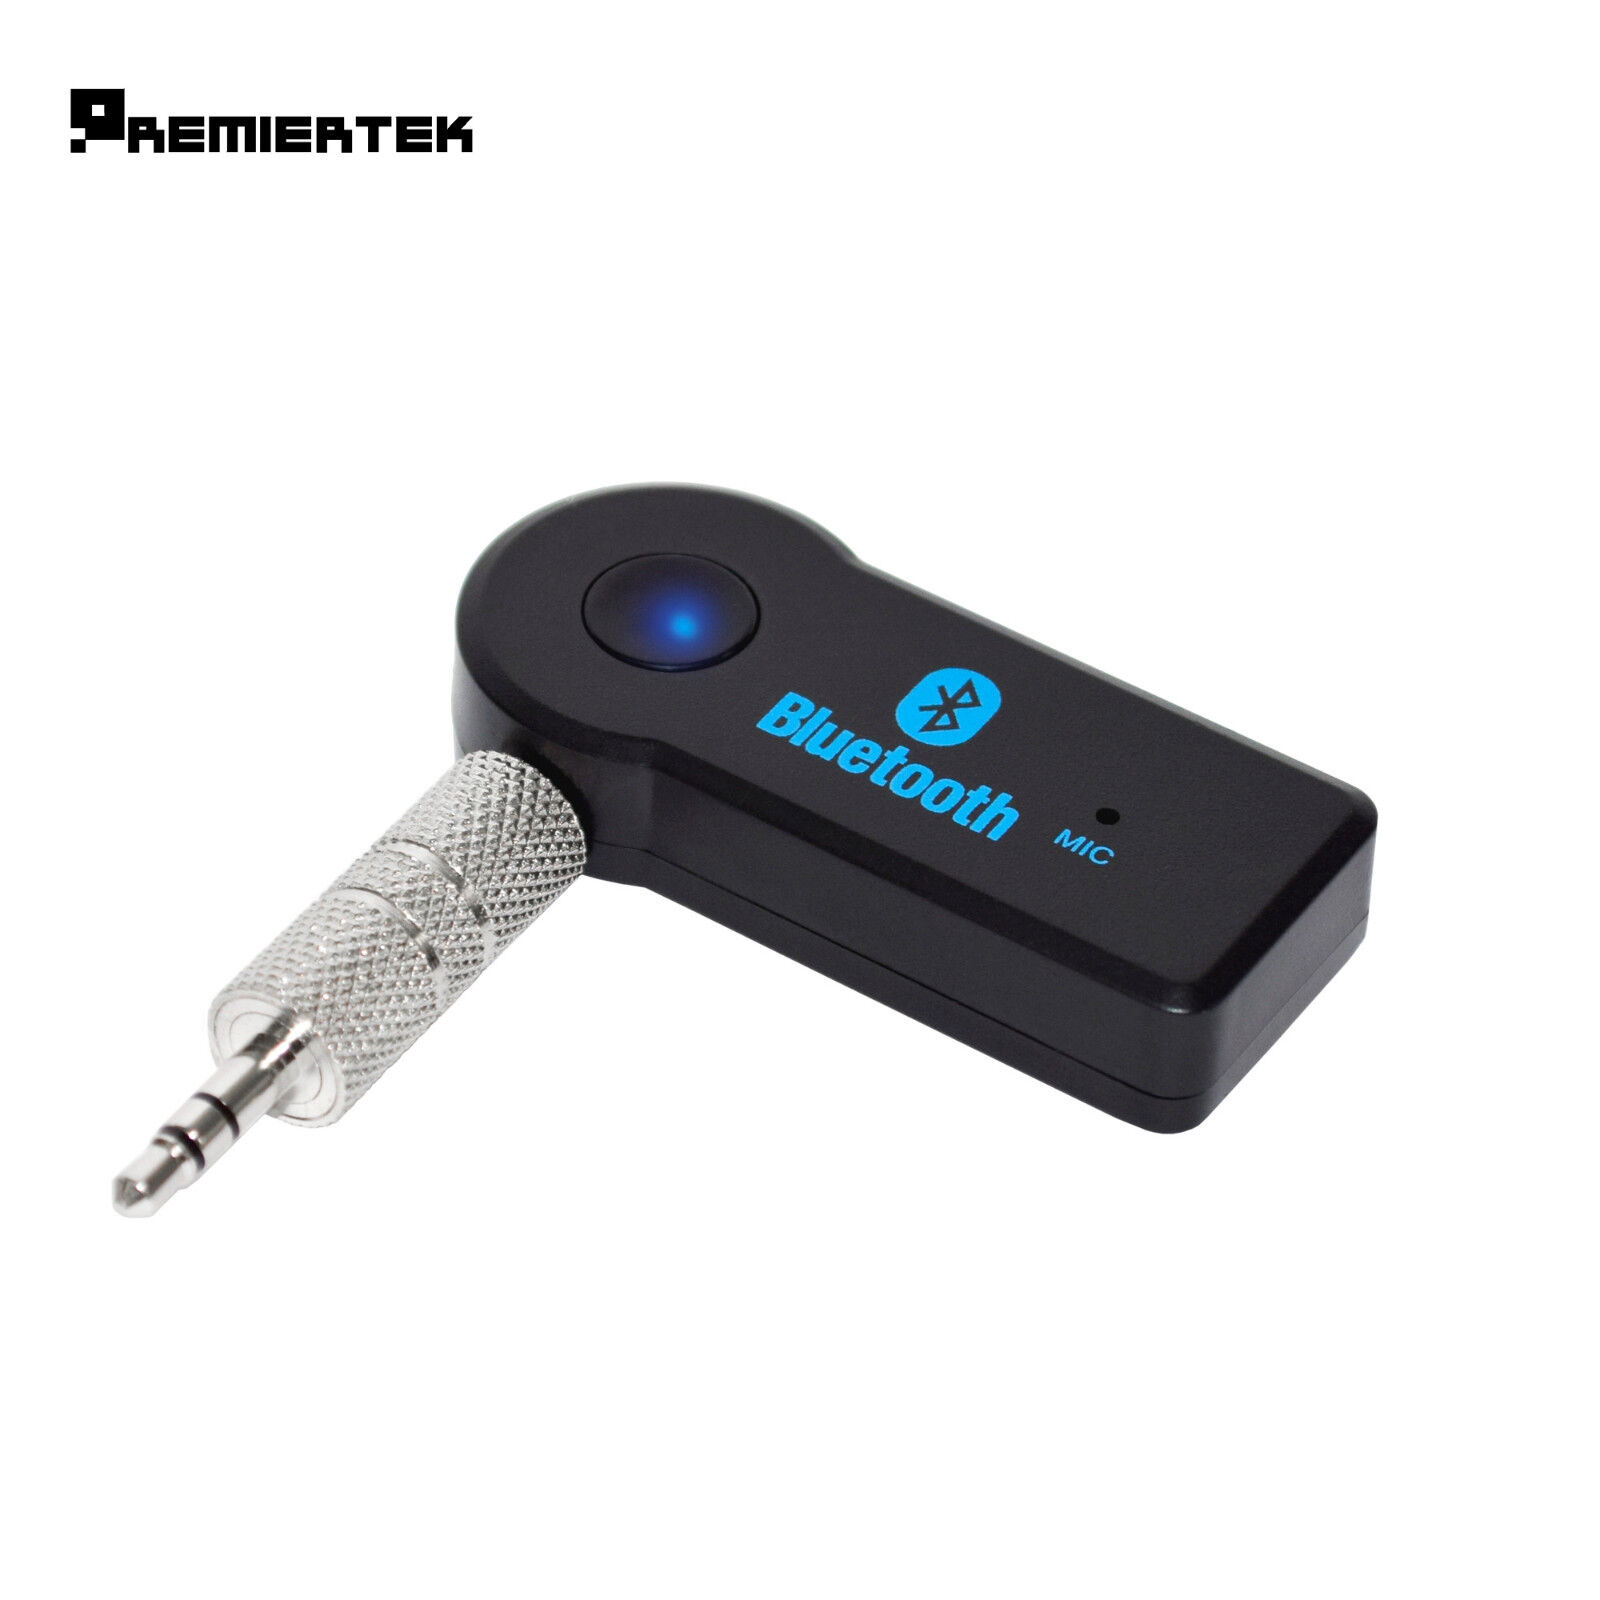 Premiertek Wireless Bluetooth 3.5mm AUX Audio Stereo Music Car Receiver Adapter PREMIERTEK BT3035